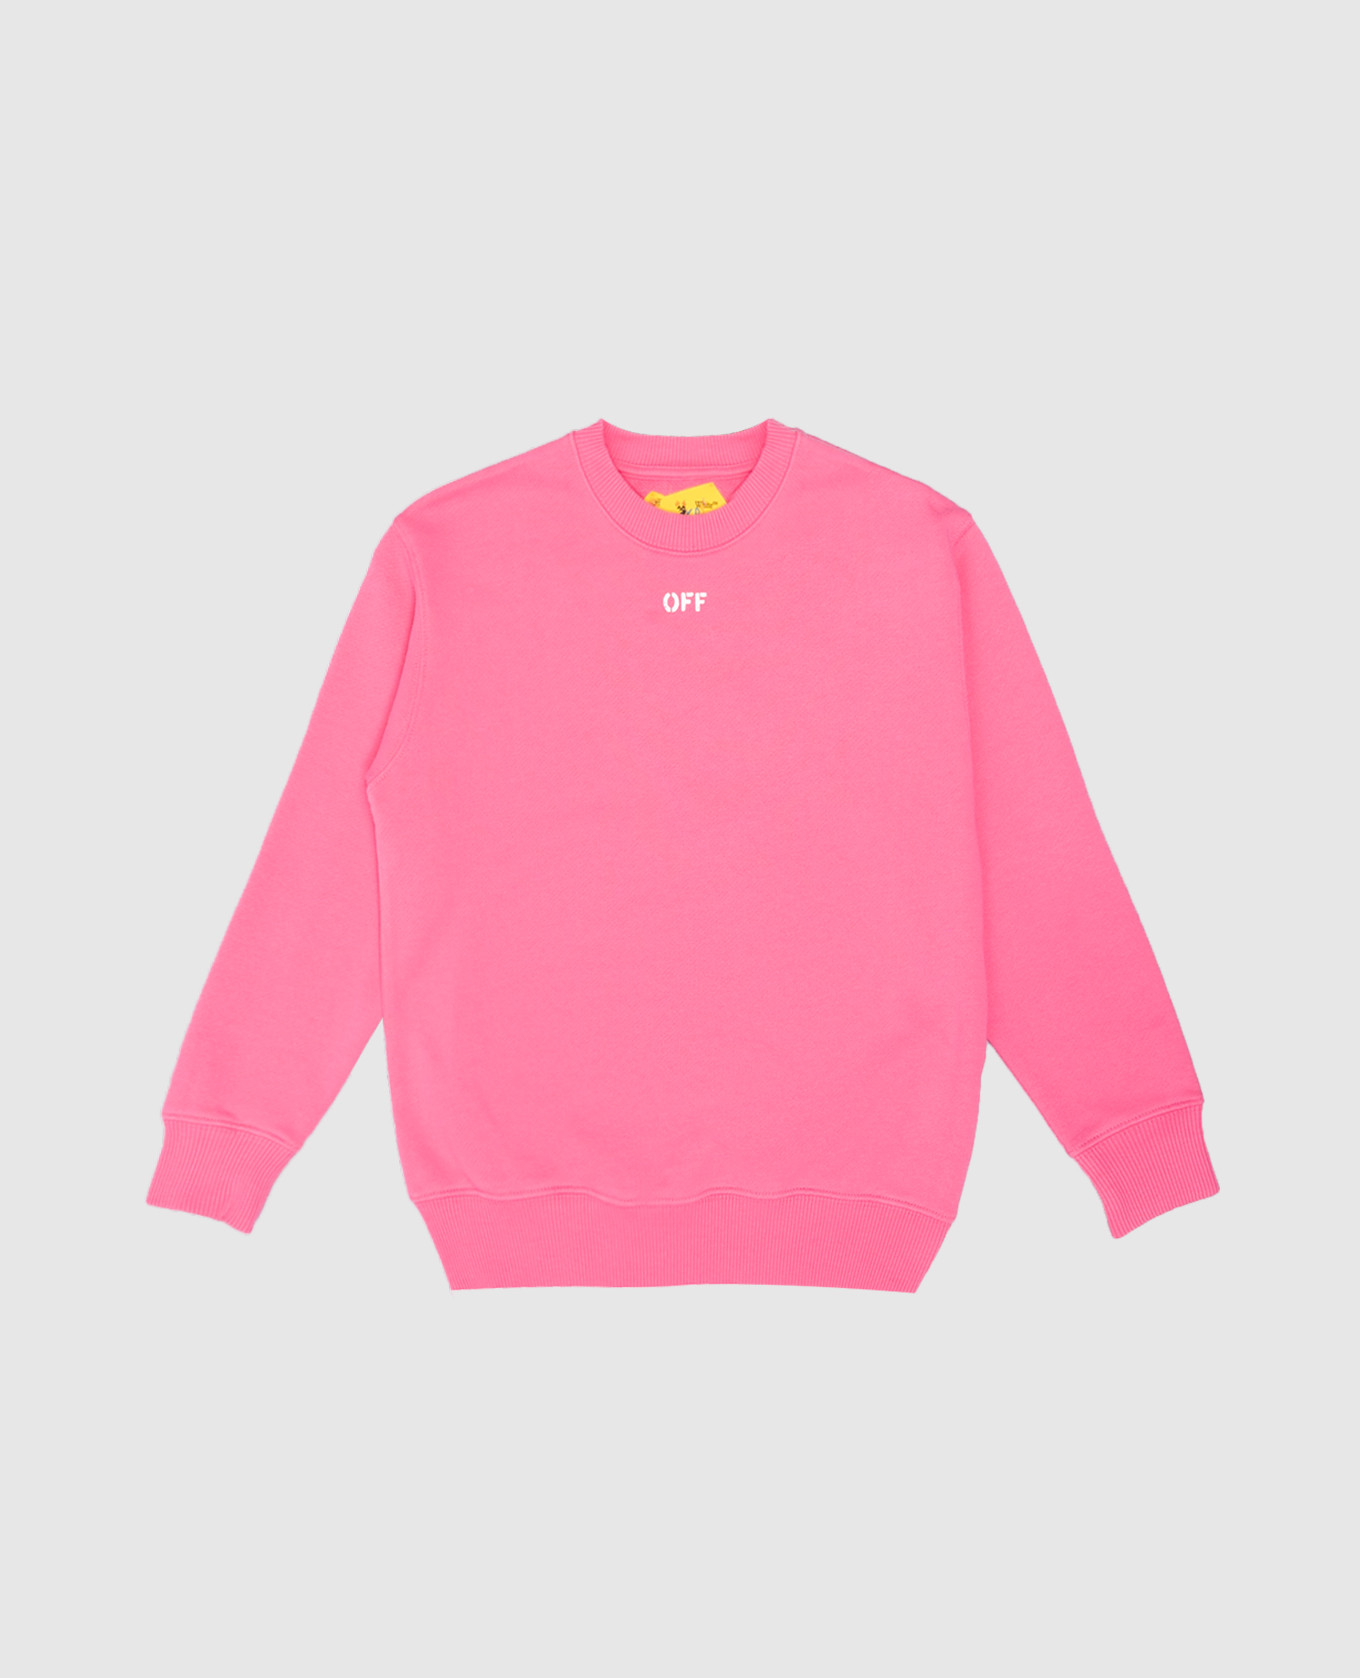 Children's pink sweatshirt with a logo